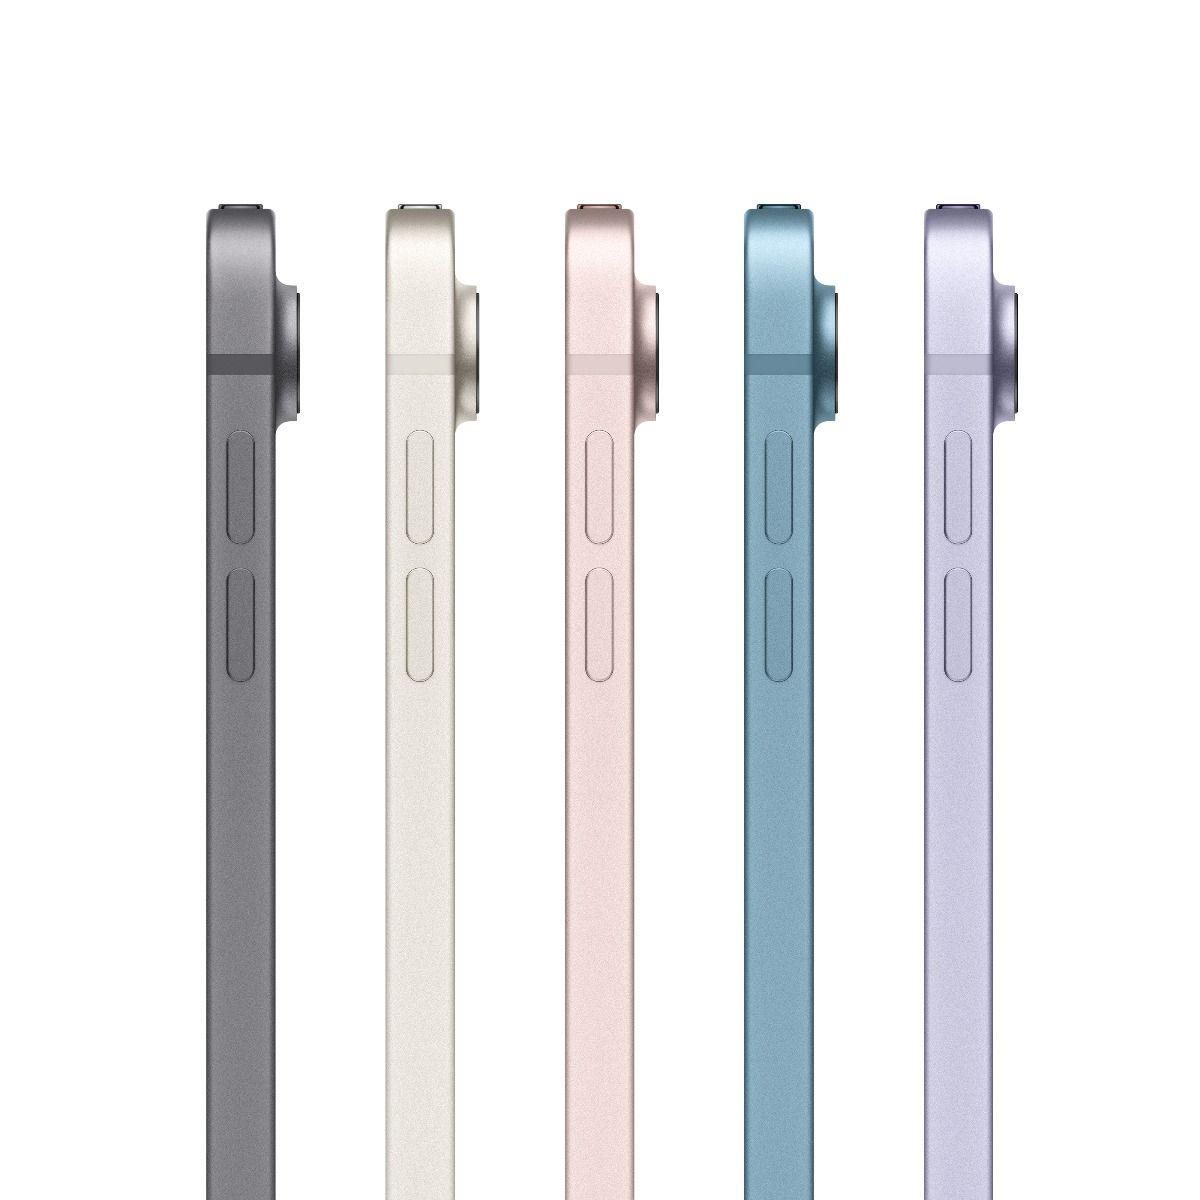 Apple iPad Air 5 10,9"" Wi-Fi + Cellular 64 GB - Ružová1 